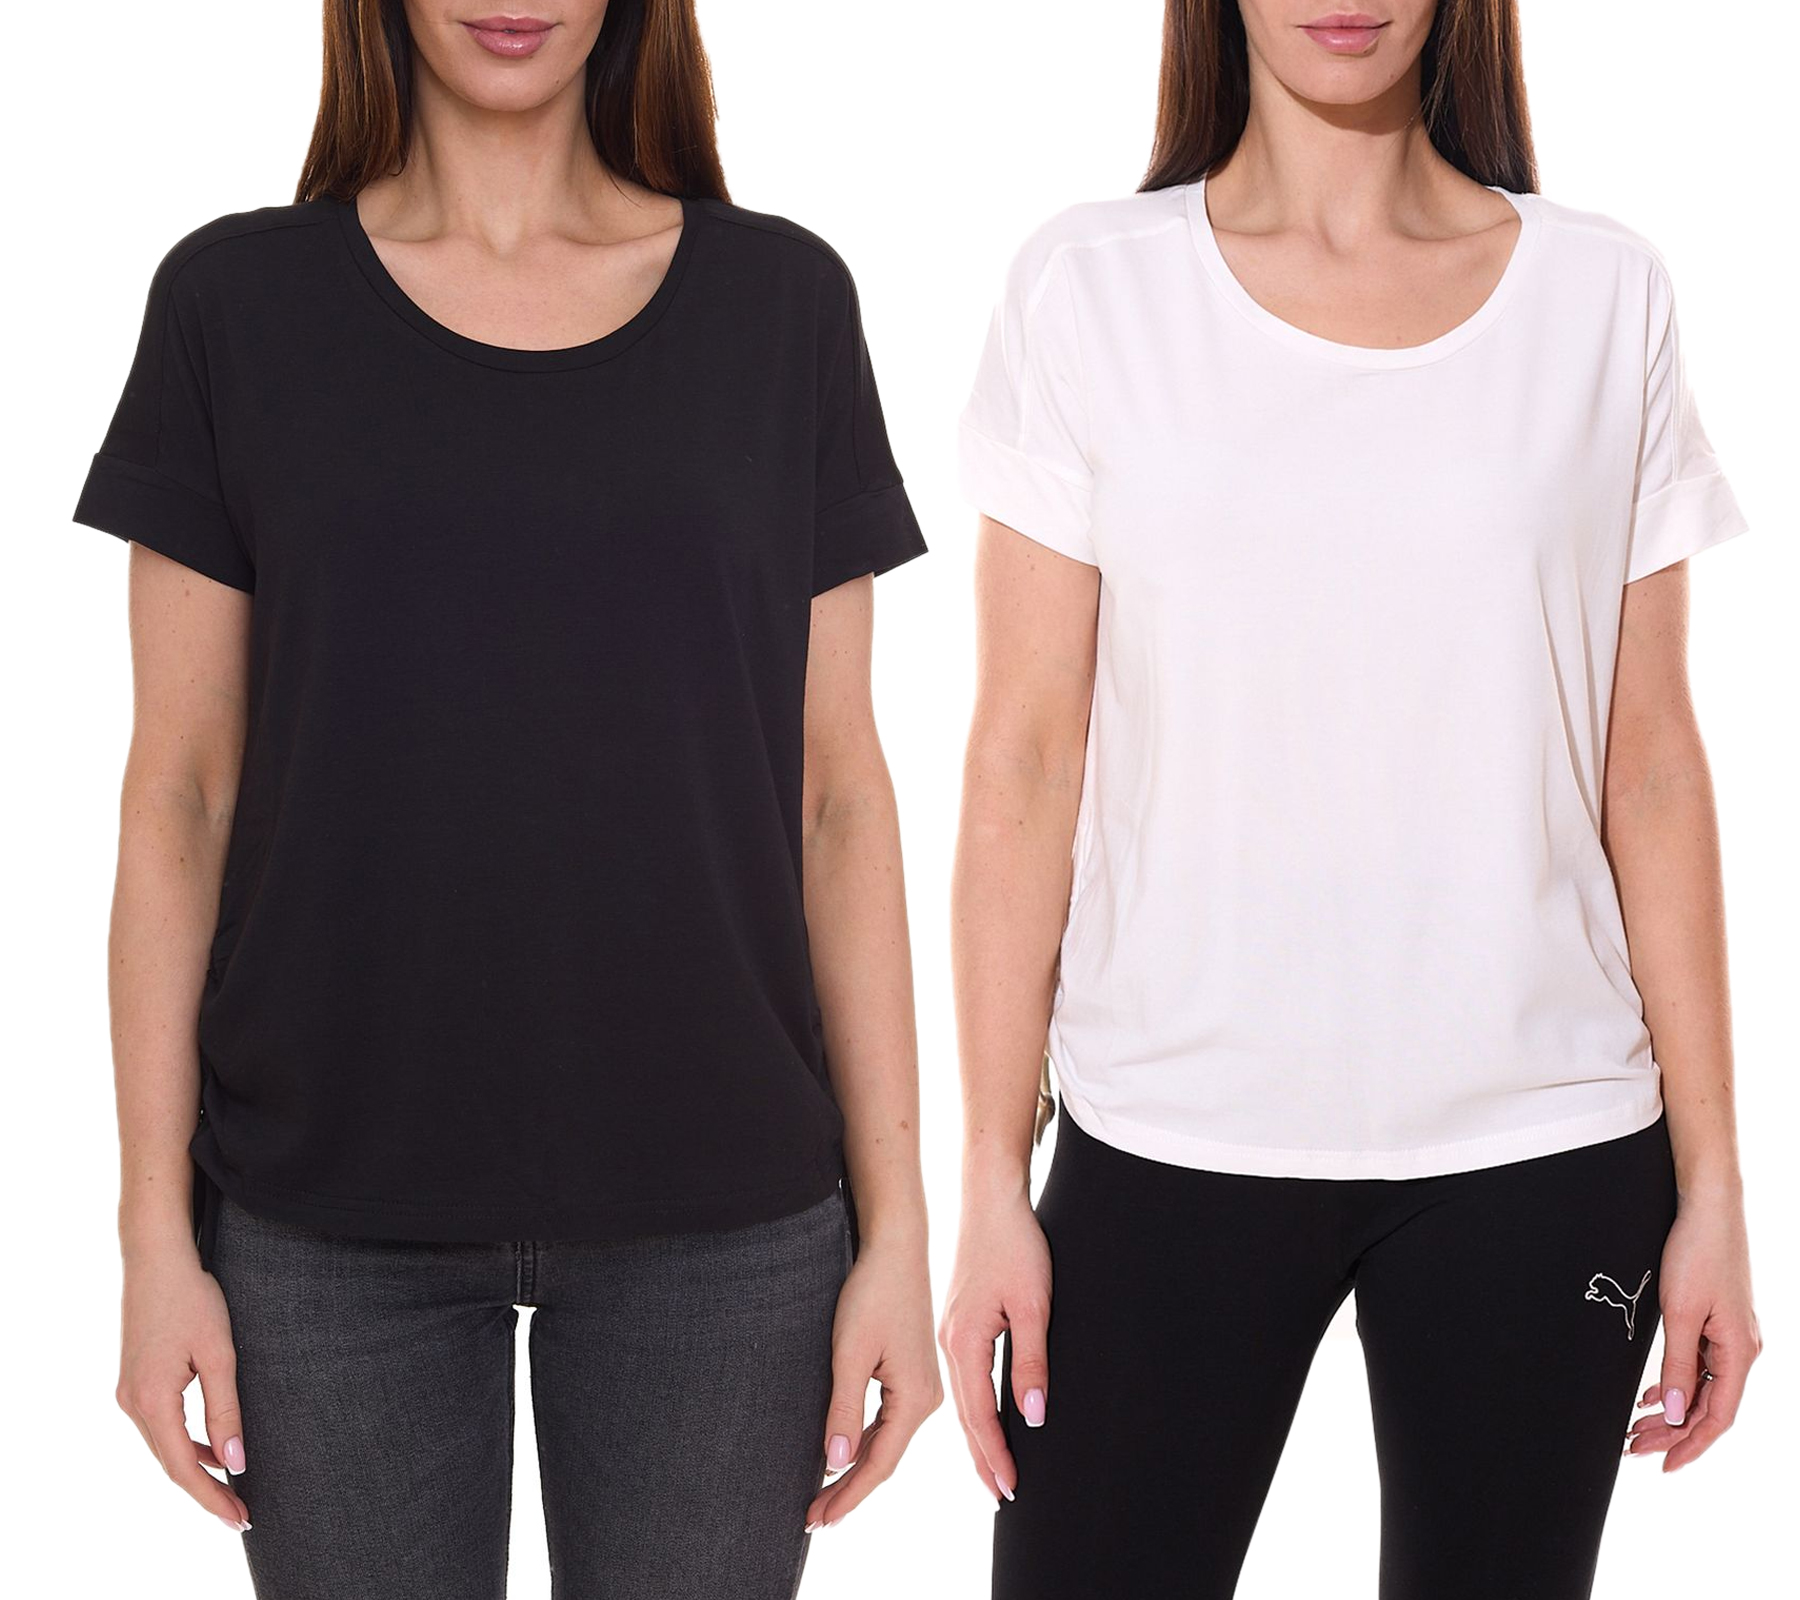 FAYN SPORTS Damen Sport-Shirt mit Schnürung T-Shirt Rundhals-Shirt Schwarz oder Weiß von FAYN SPORTS